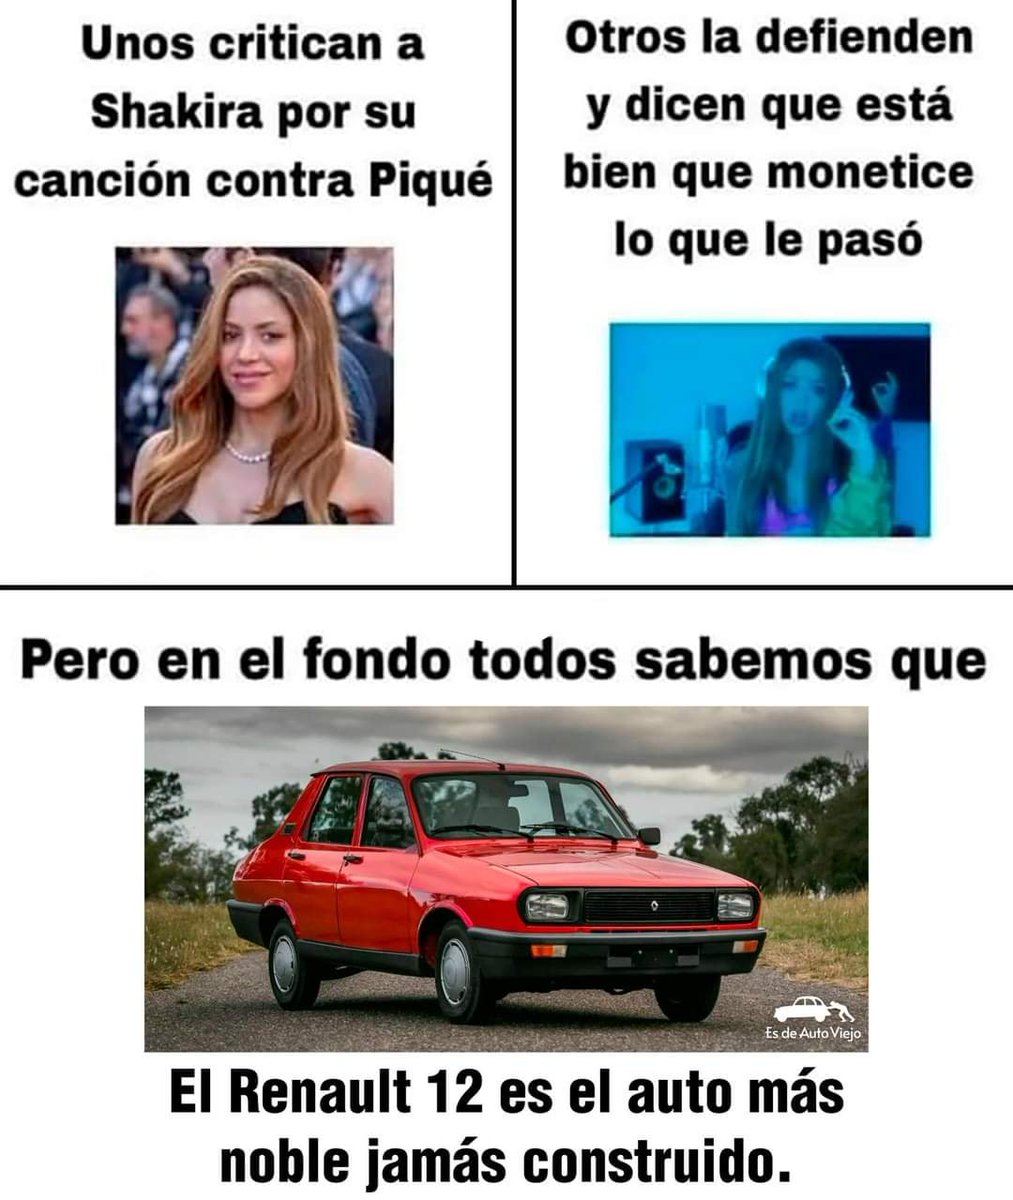 #Renault12 #Shakira